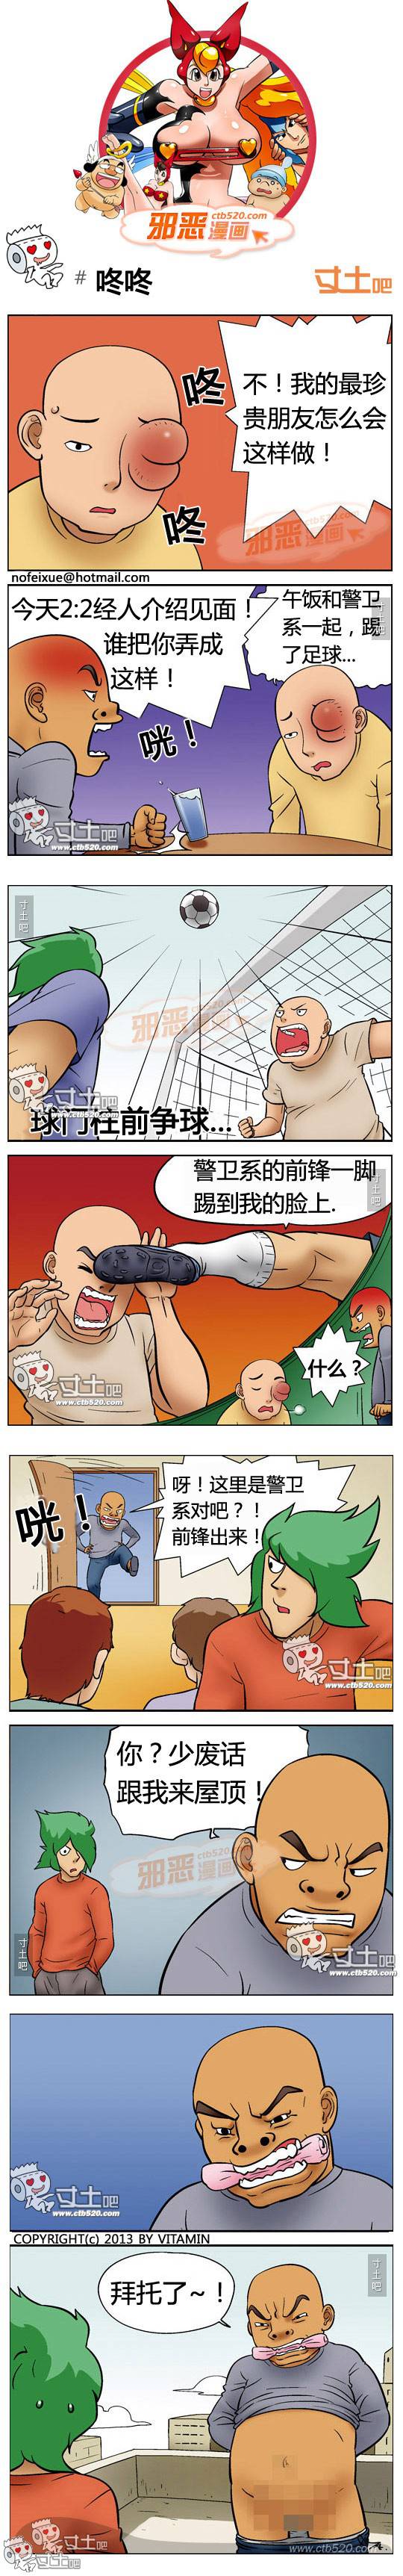 邪恶漫画爆笑囧图第321刊：私人玩具